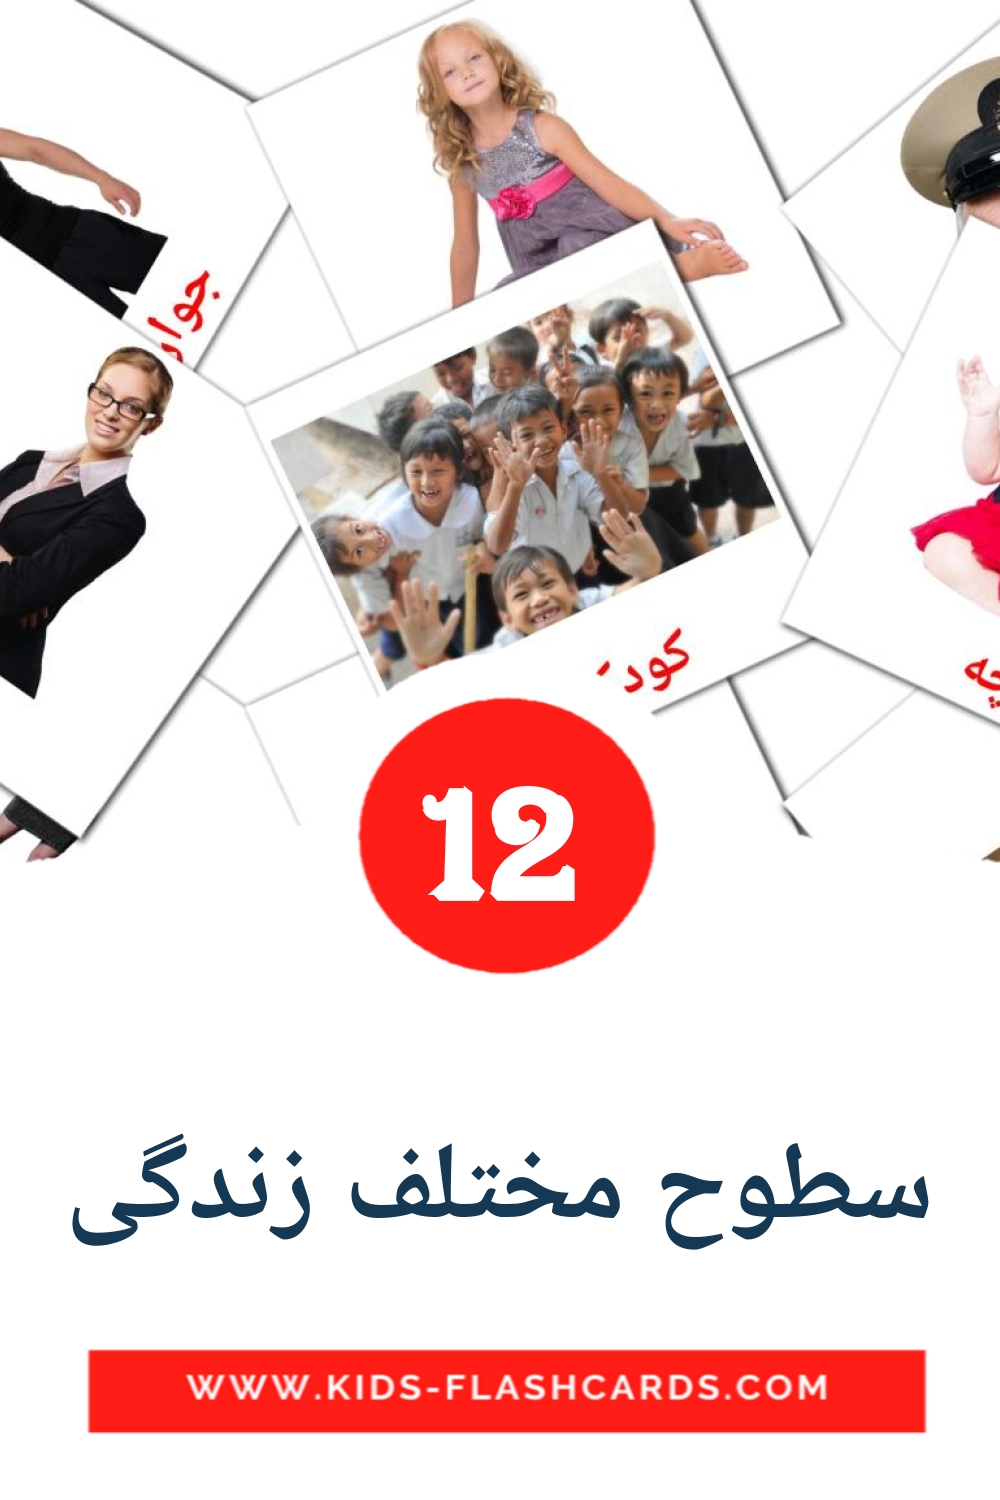 12 Cartões com Imagens de سطوح مختلف زندگی para Jardim de Infância em persa